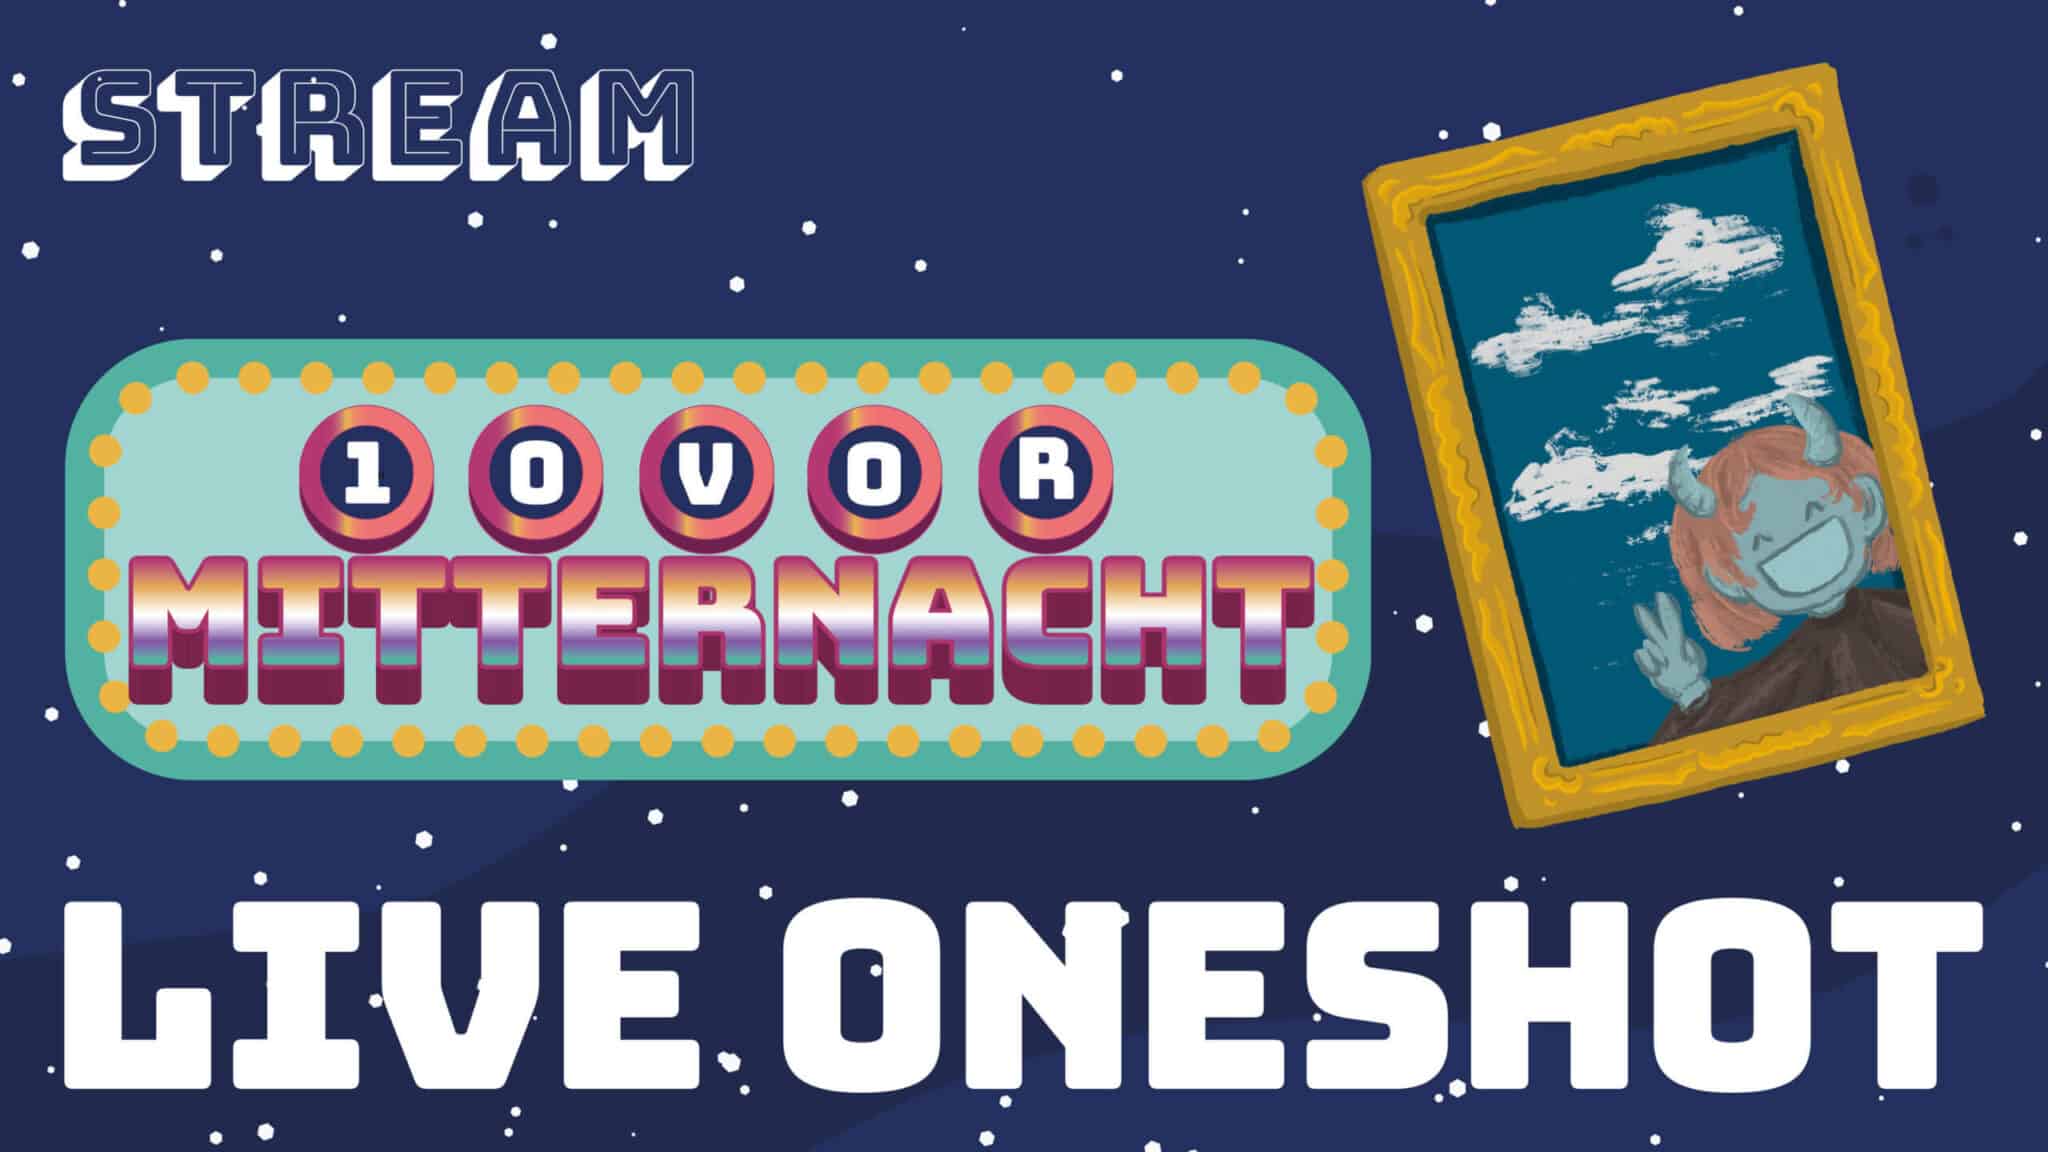 Live OneShot: Ein D&D Casino Heist der Extraklasse!